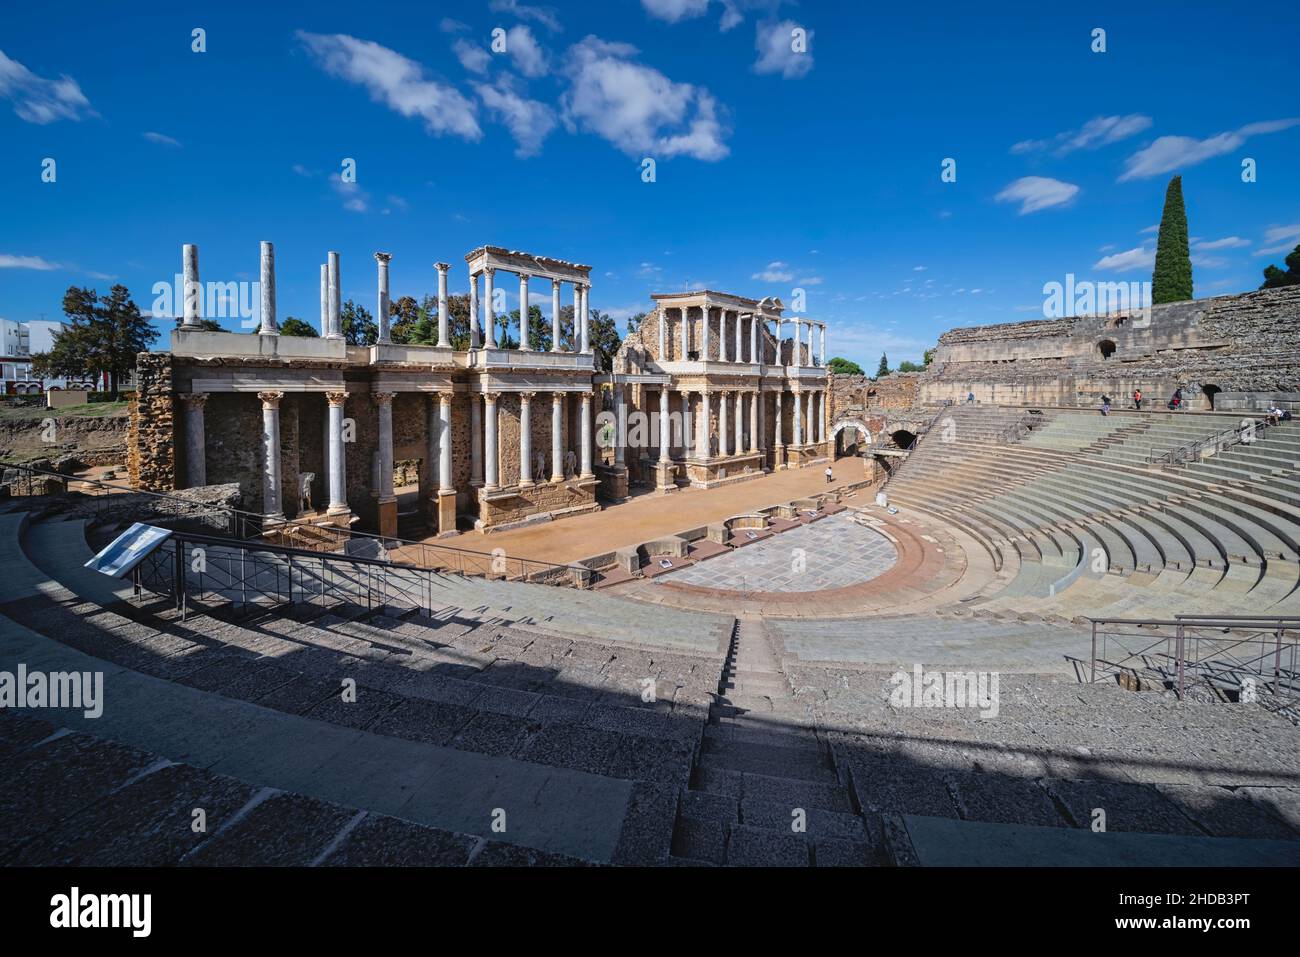 Teatro romano, Mérida, provincia de Badajoz, Extremadura, España. El teatro fue construido originalmente en los años 16 a 15 AC. El ENSEM Arqueológico Foto de stock